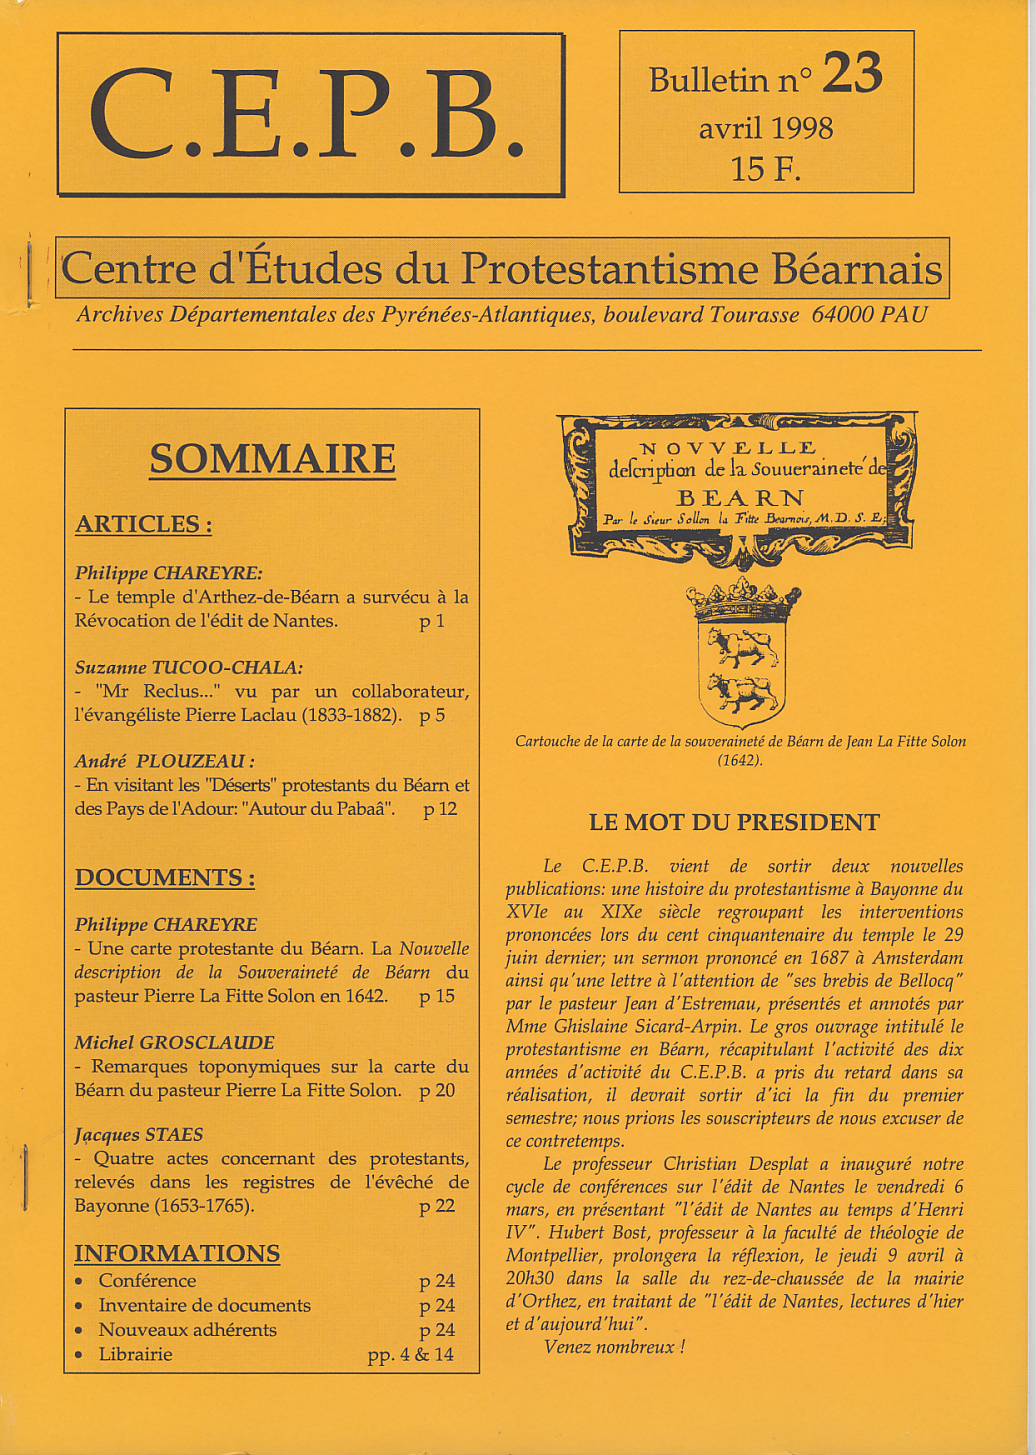 CEPB protestantisme Béarn bulletin 23